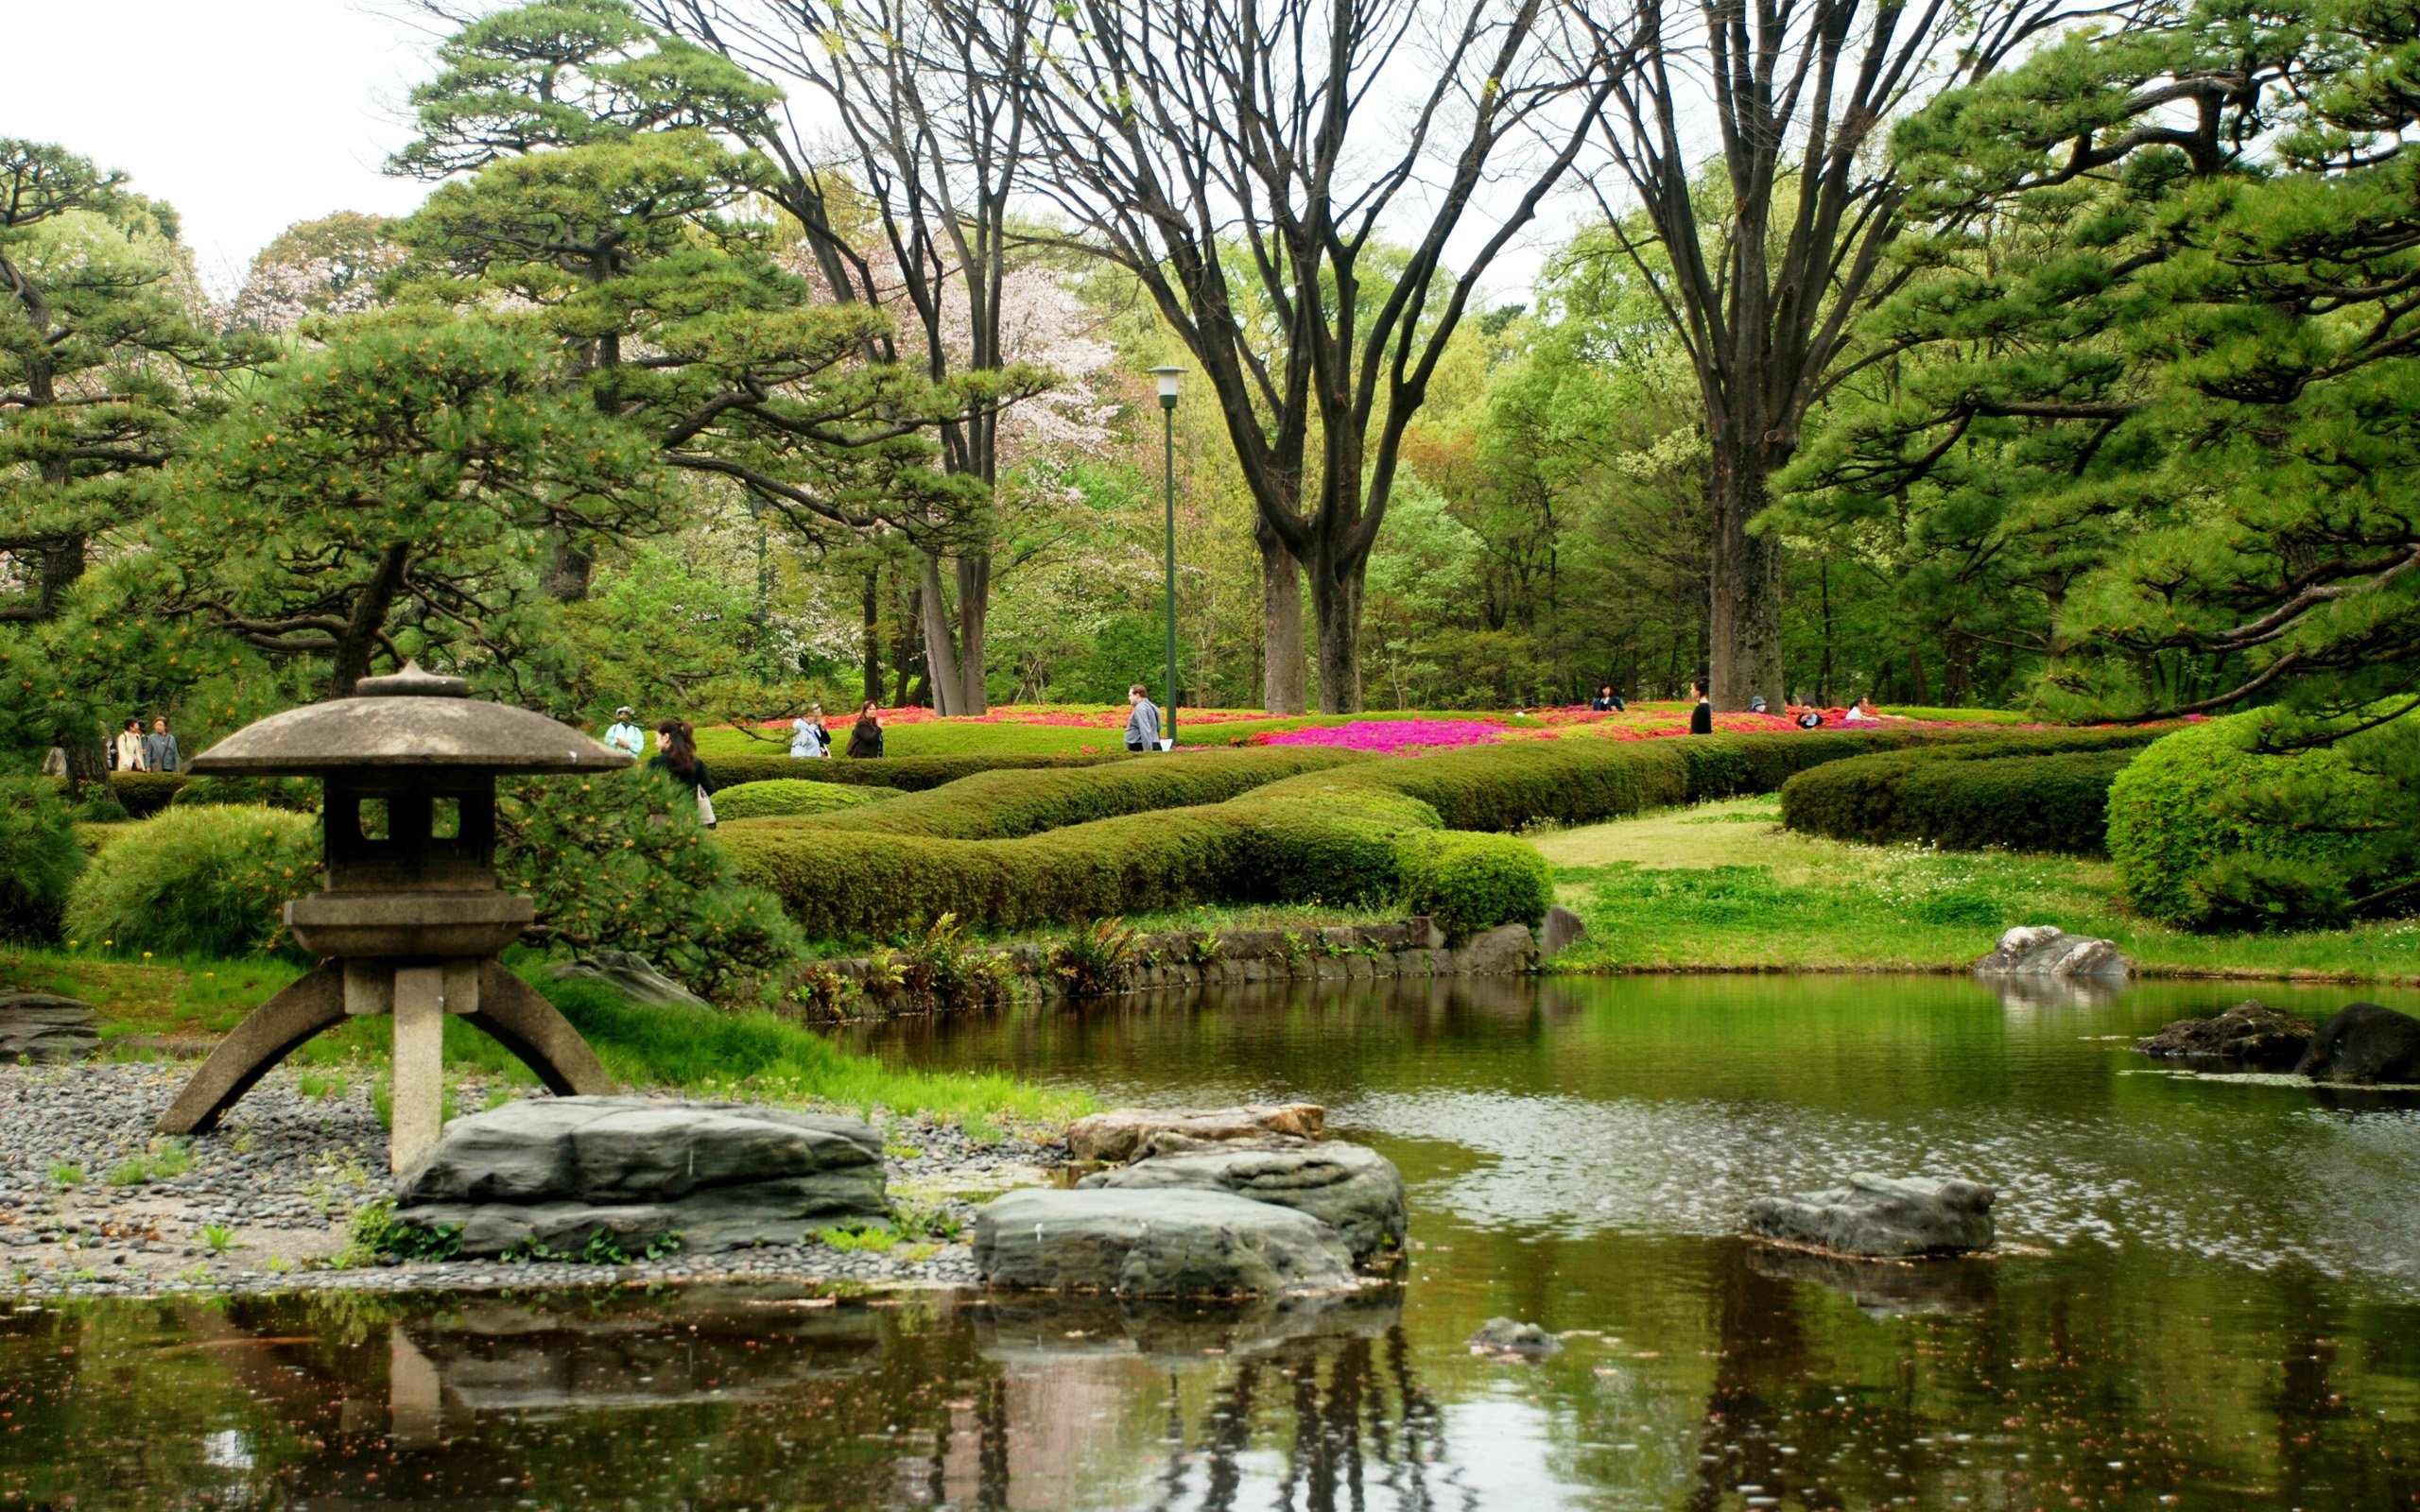 Забронировать столик в японском саду. Ландшафтный пейзажный сад Японии. Парк Галинского японский сад. Японский сад в парке Кадриорг. Парк ОИСИ Япония.